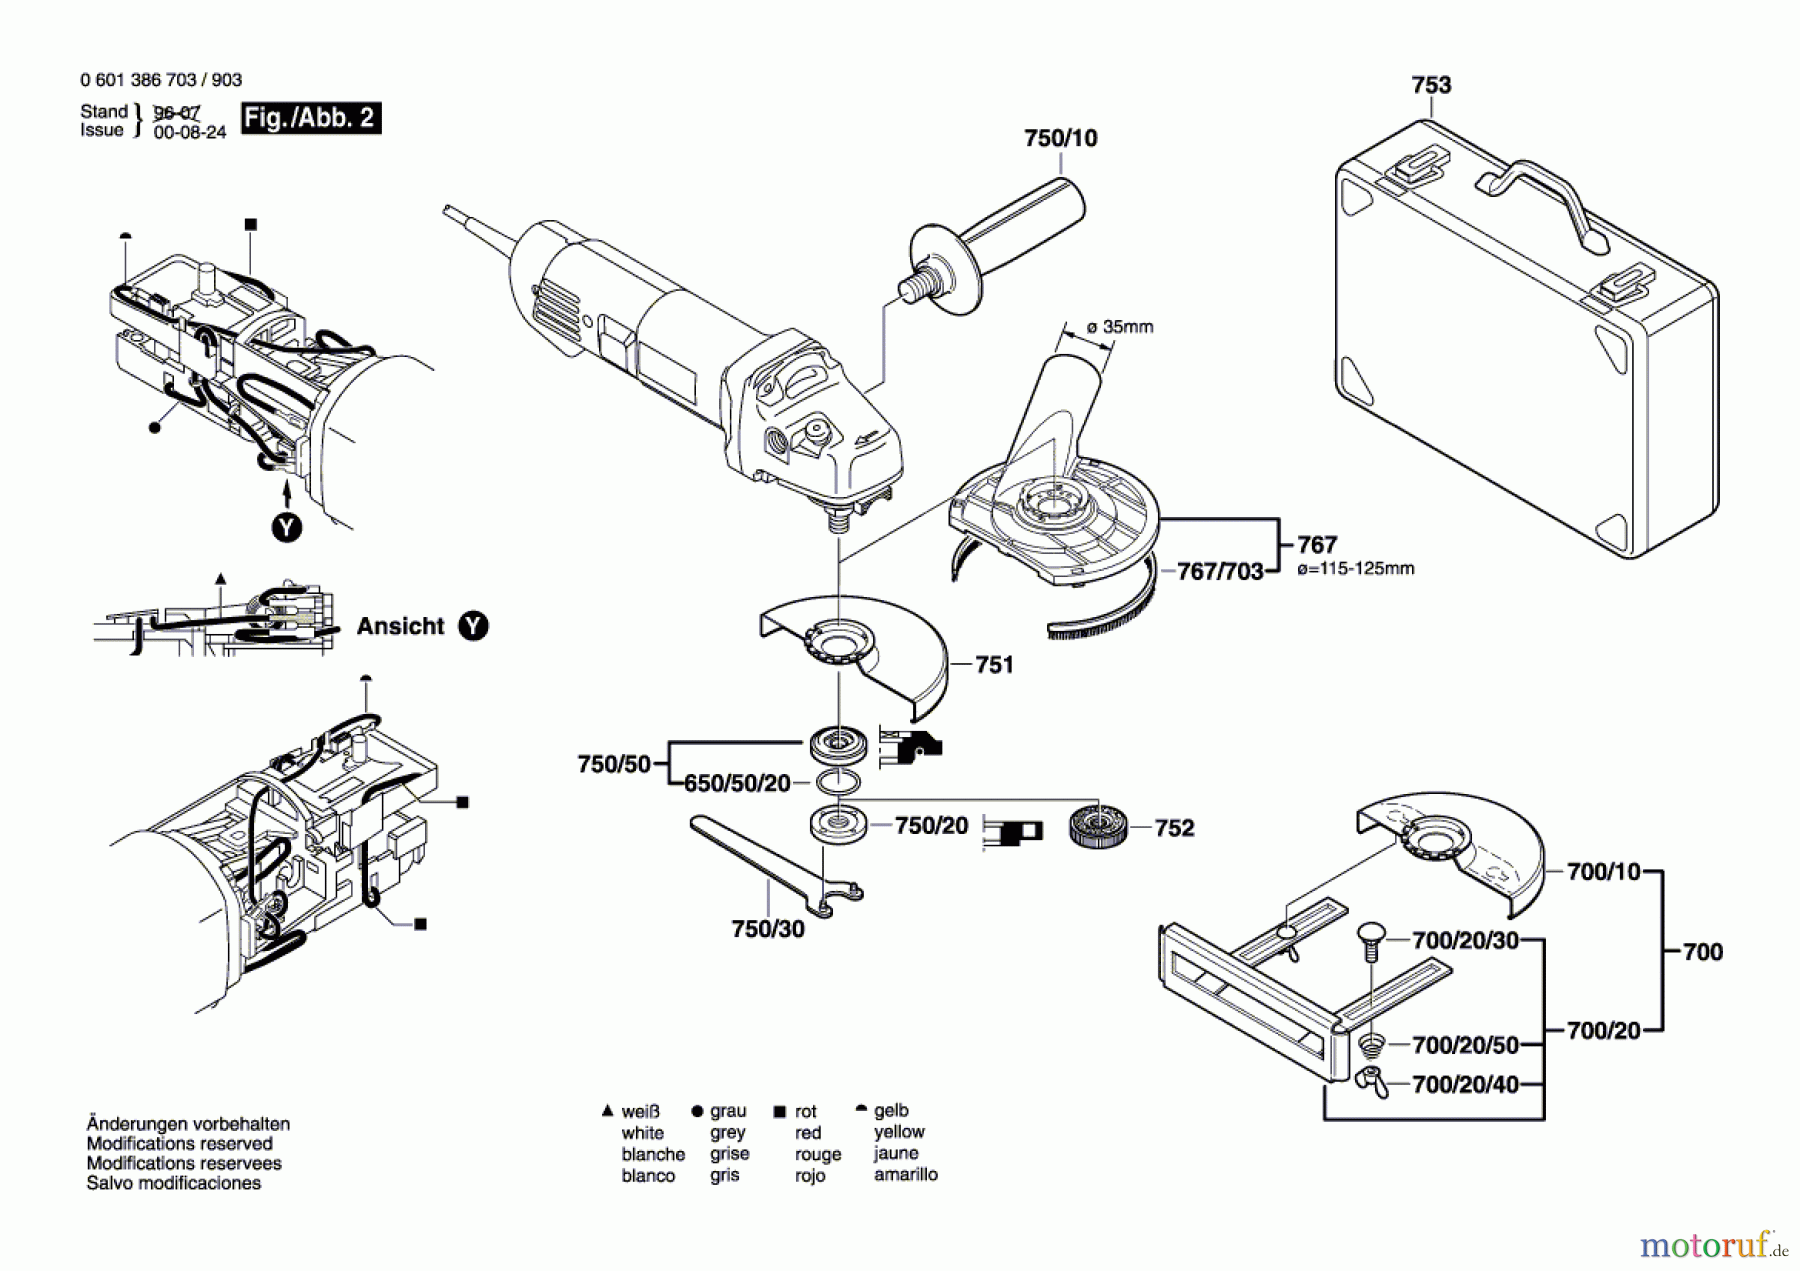  Bosch Werkzeug Winkelschleifer GWS 14-150 C Seite 2